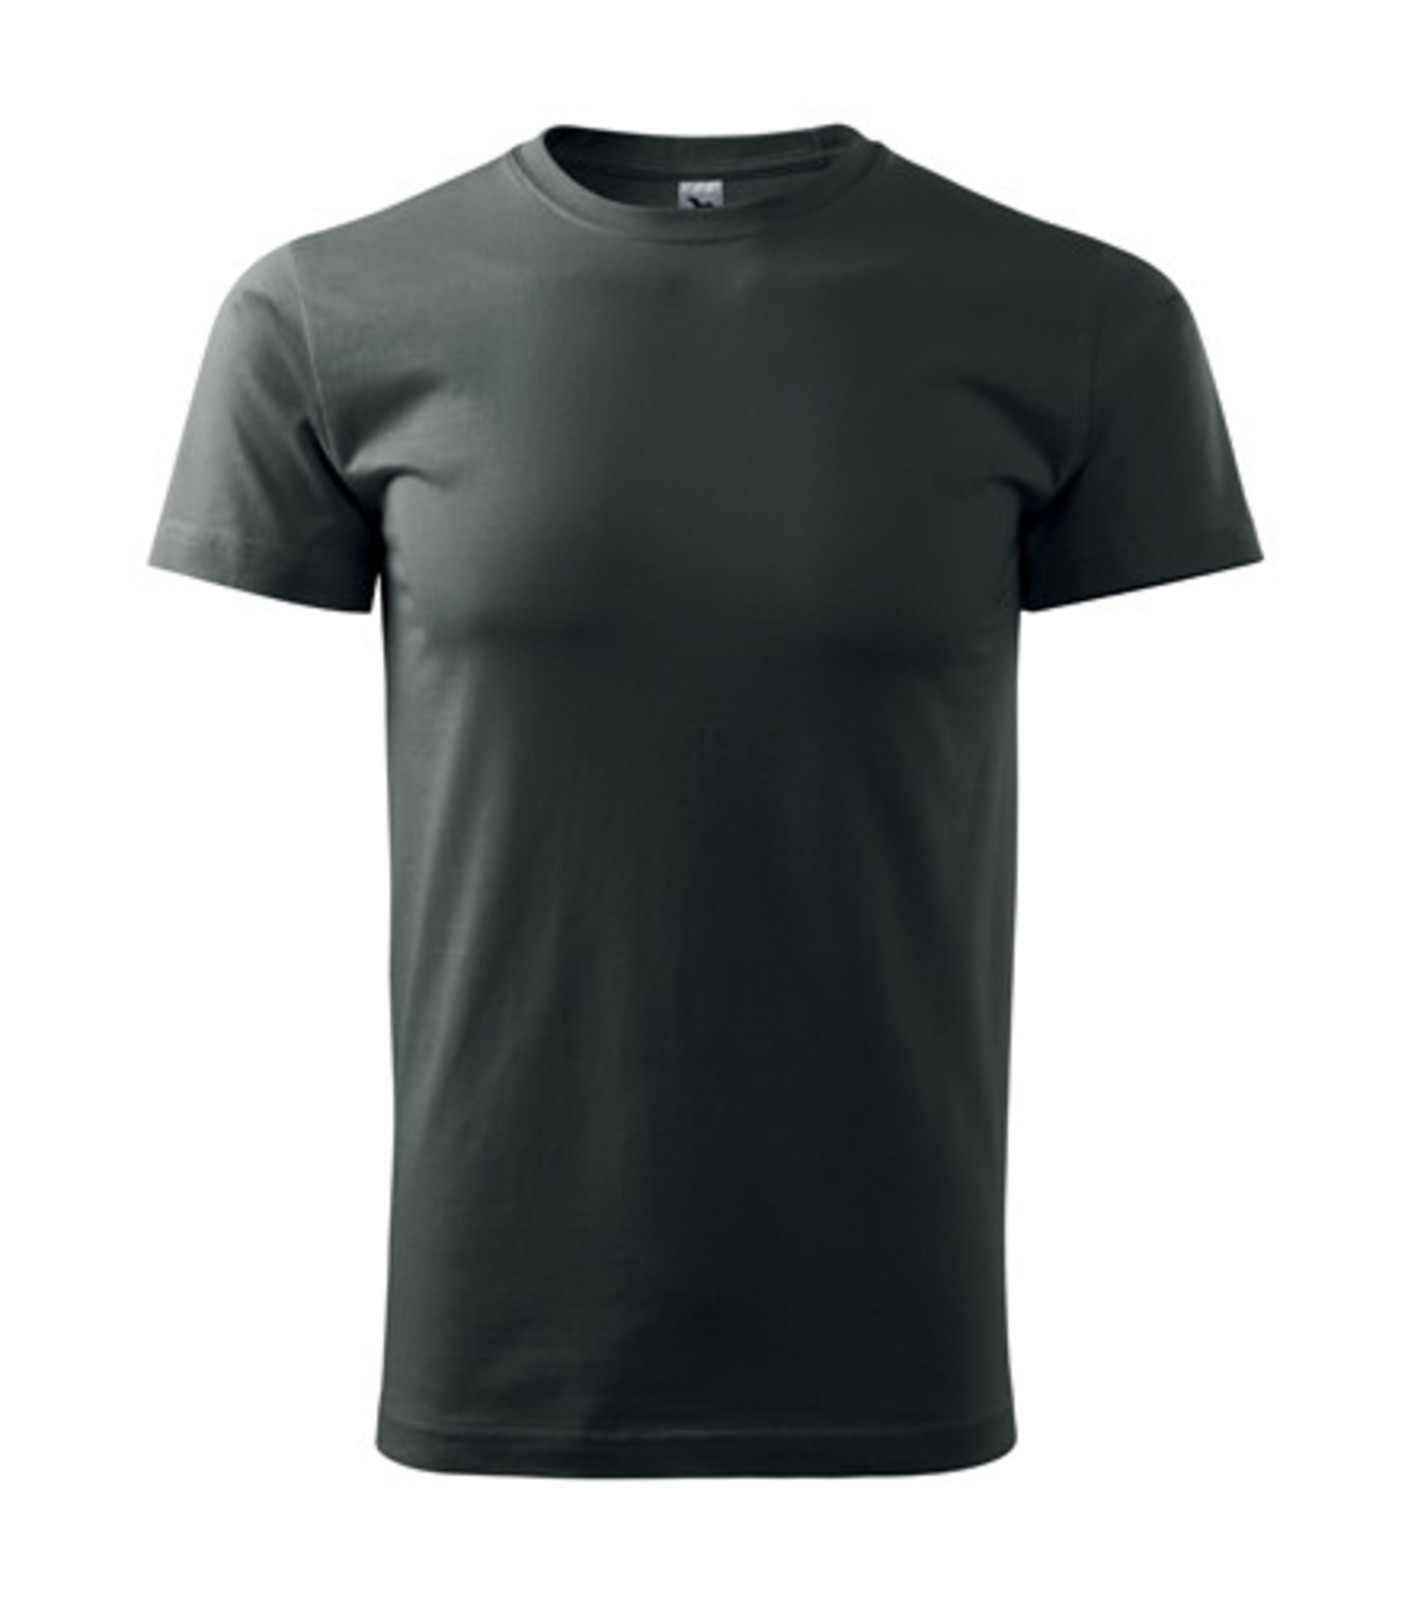 Unisex tričko Malfini Heavy New 137 - veľkosť: XL, farba: tmavá bridlica